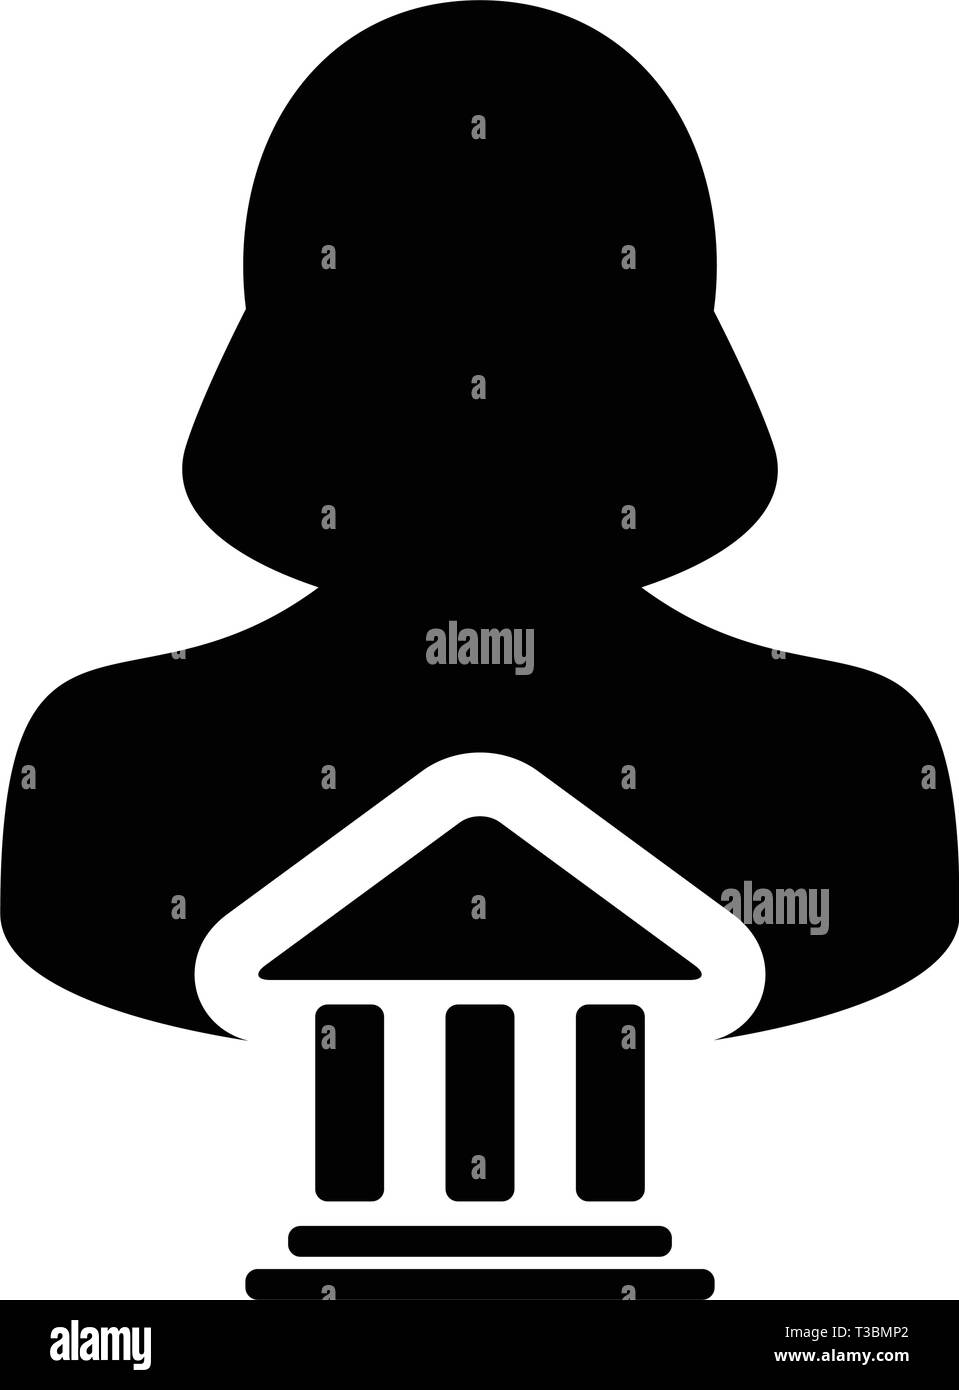 Finanzen Symbol Vektor mit weiblichen Person Profil Avatar mit Gebäude Symbol für Geld und Finanzen in der glyphe Piktogramm Abbildung Stock Vektor